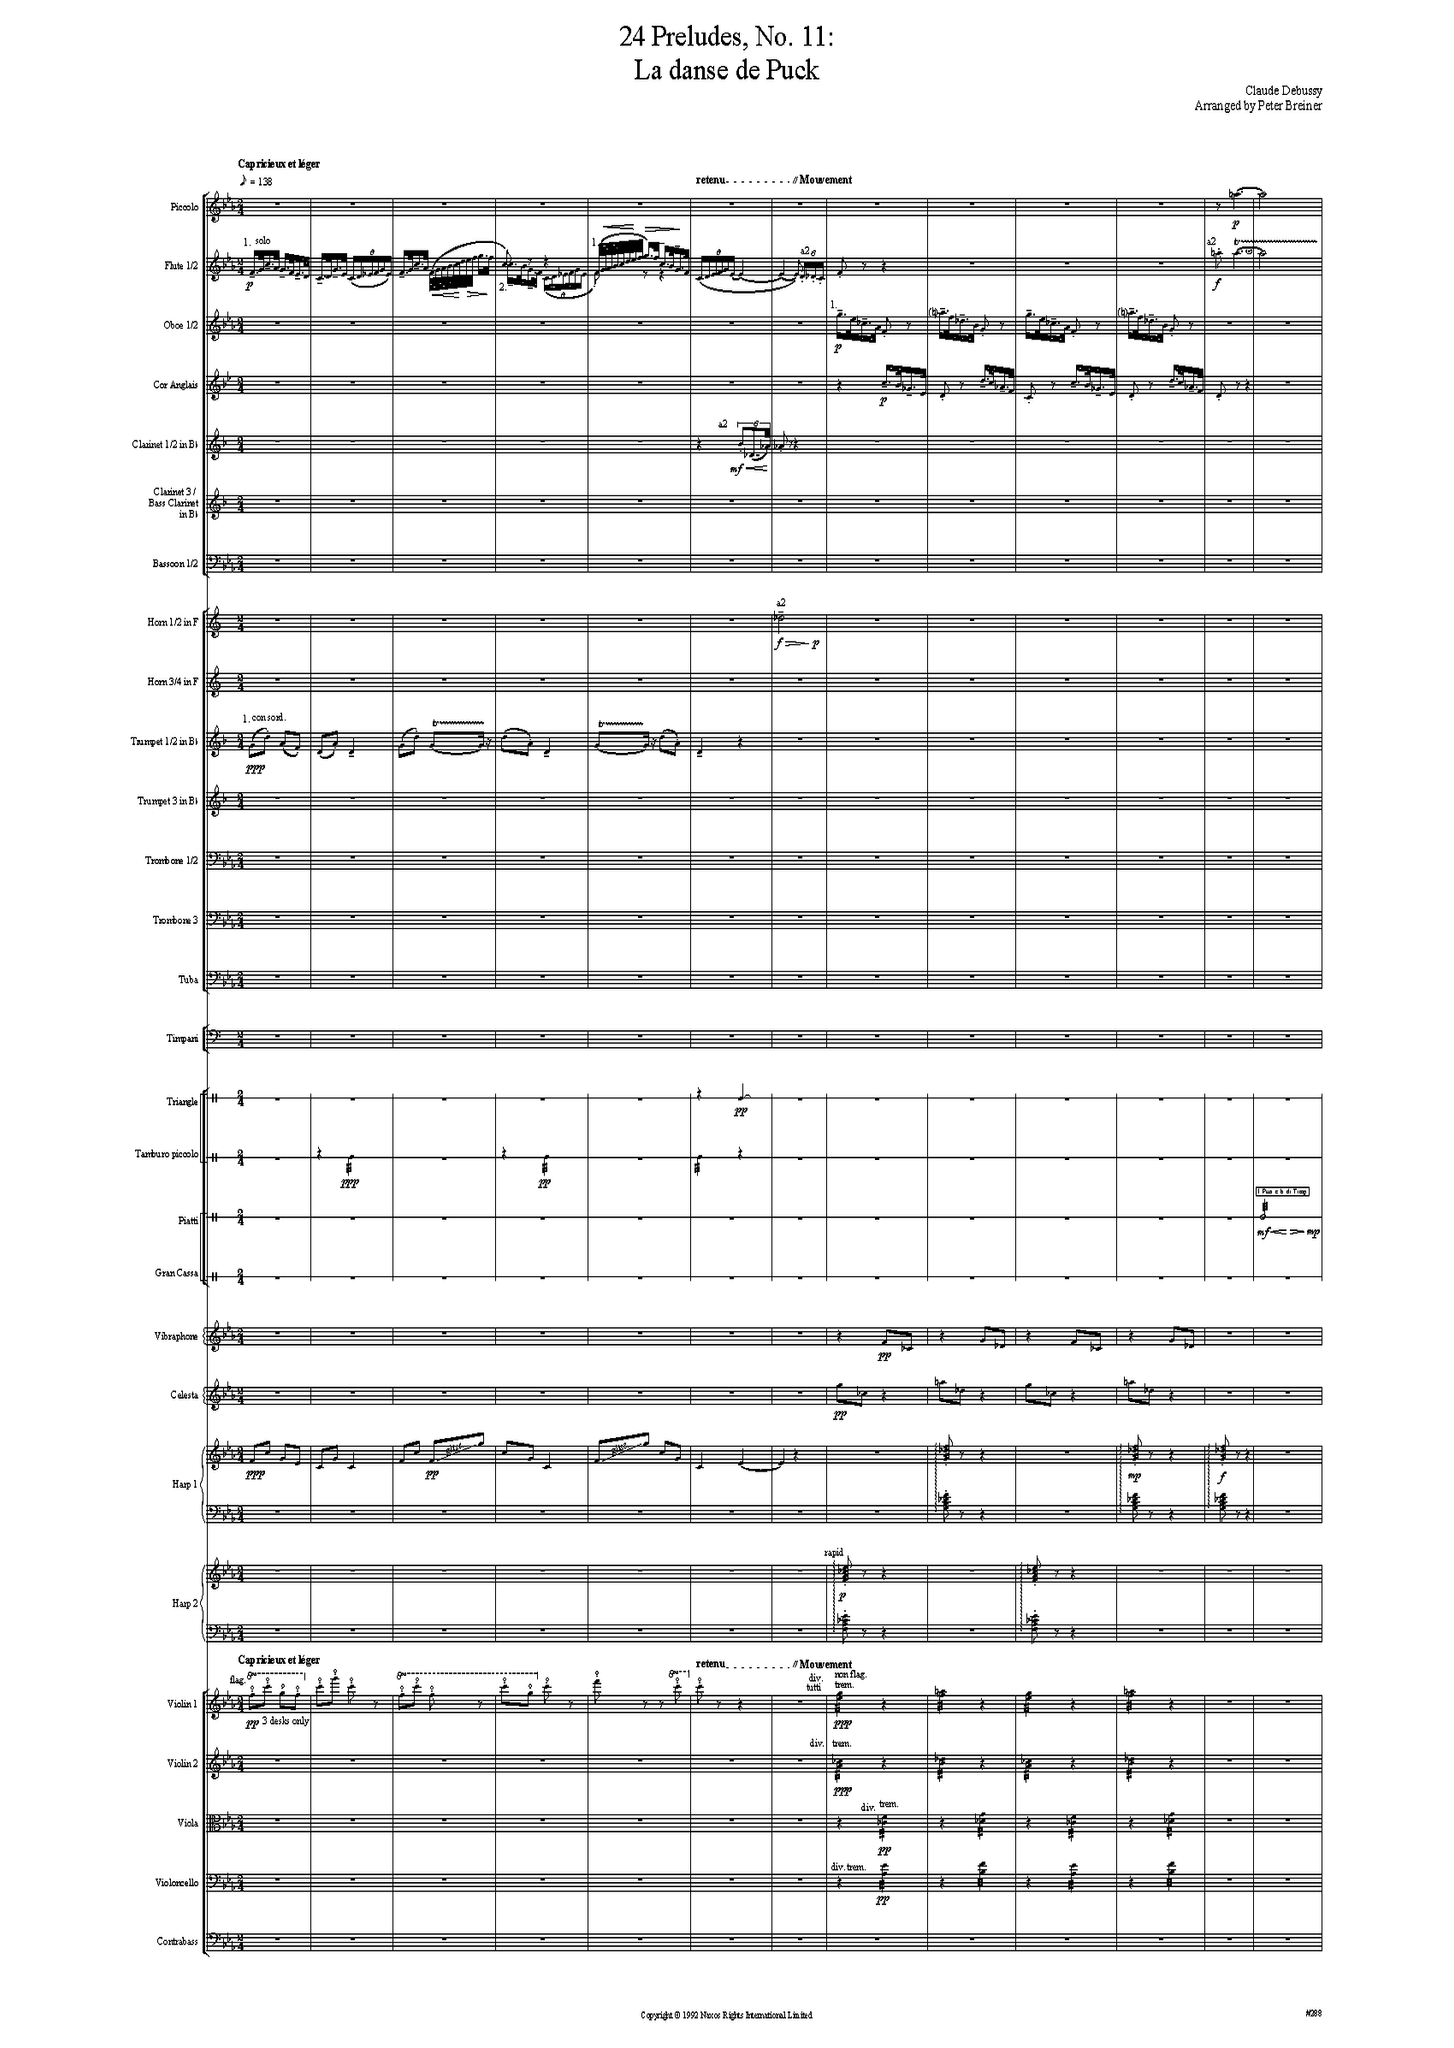 Claude Debussy: 24 Préludes, No. 11: La danse de Puck – arranged by Peter Breiner (PB028)